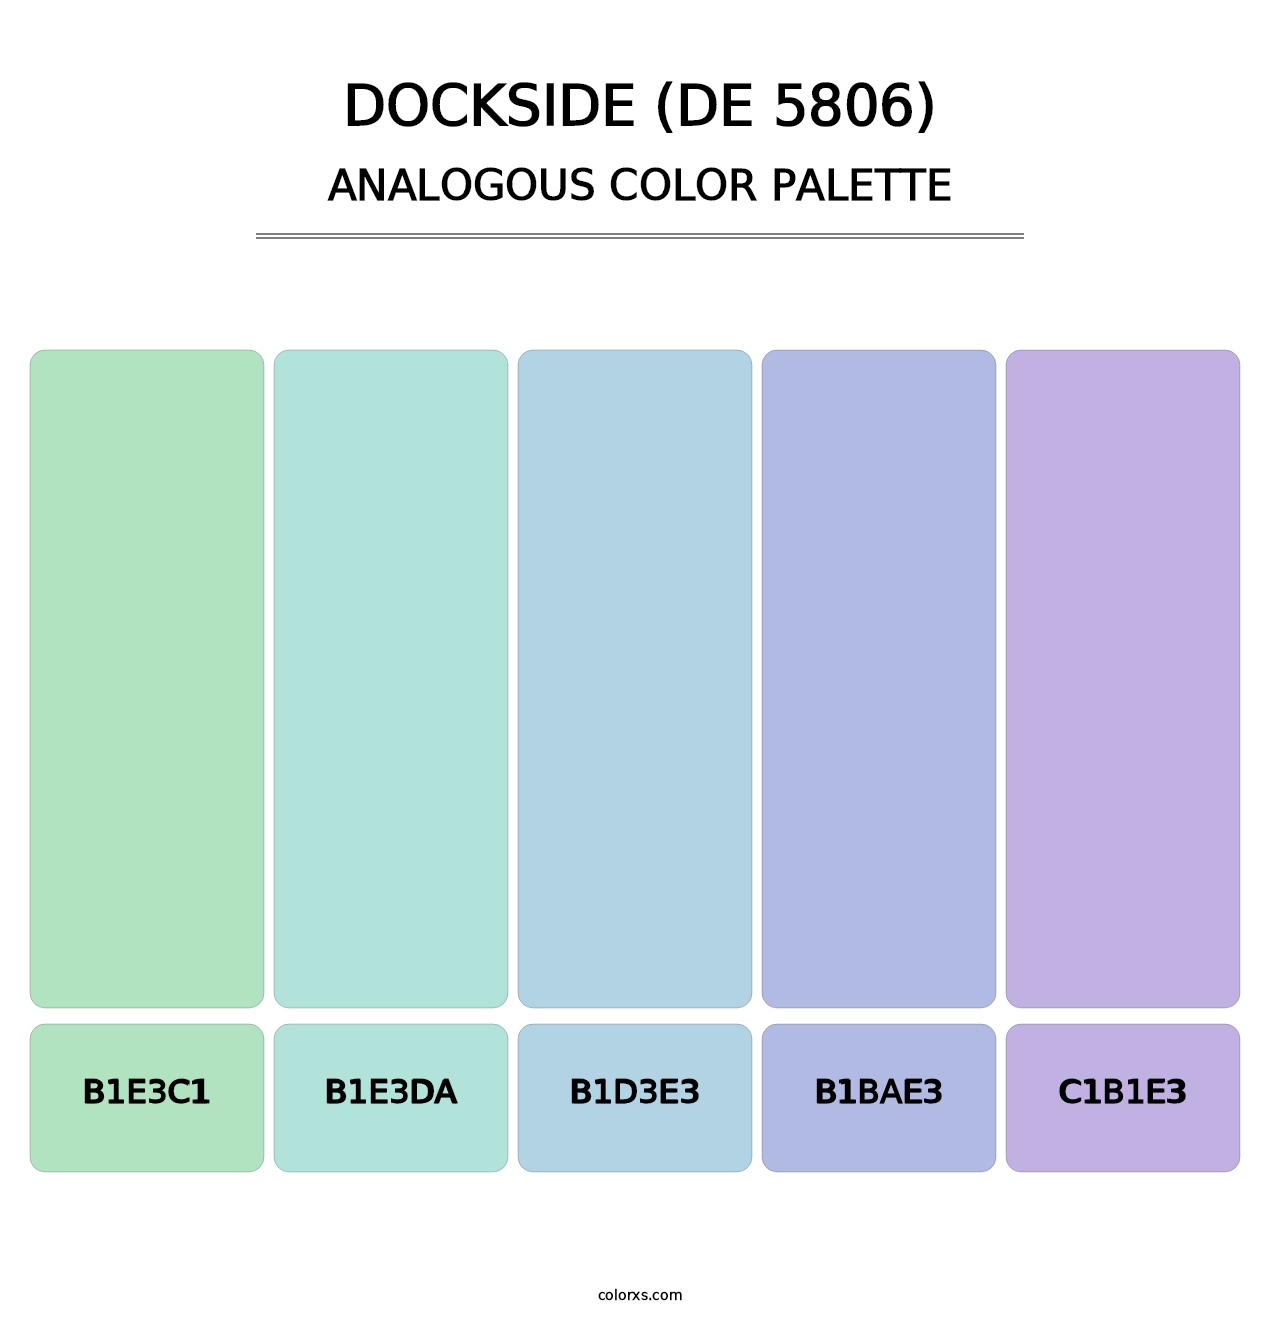 Dockside (DE 5806) - Analogous Color Palette